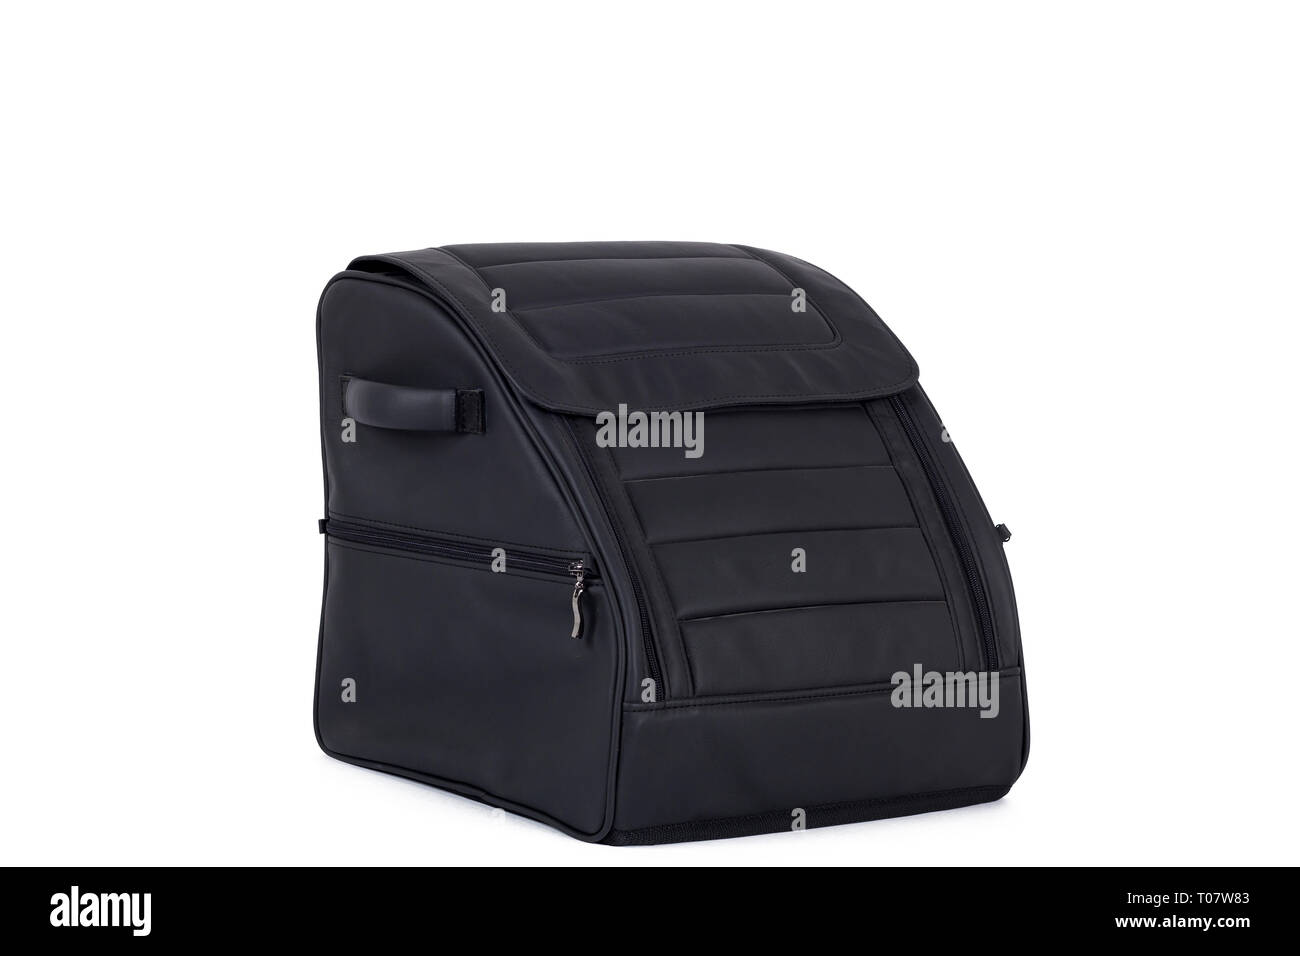 Bagages et valises dans le coffre d'un vus Photo Stock - Alamy